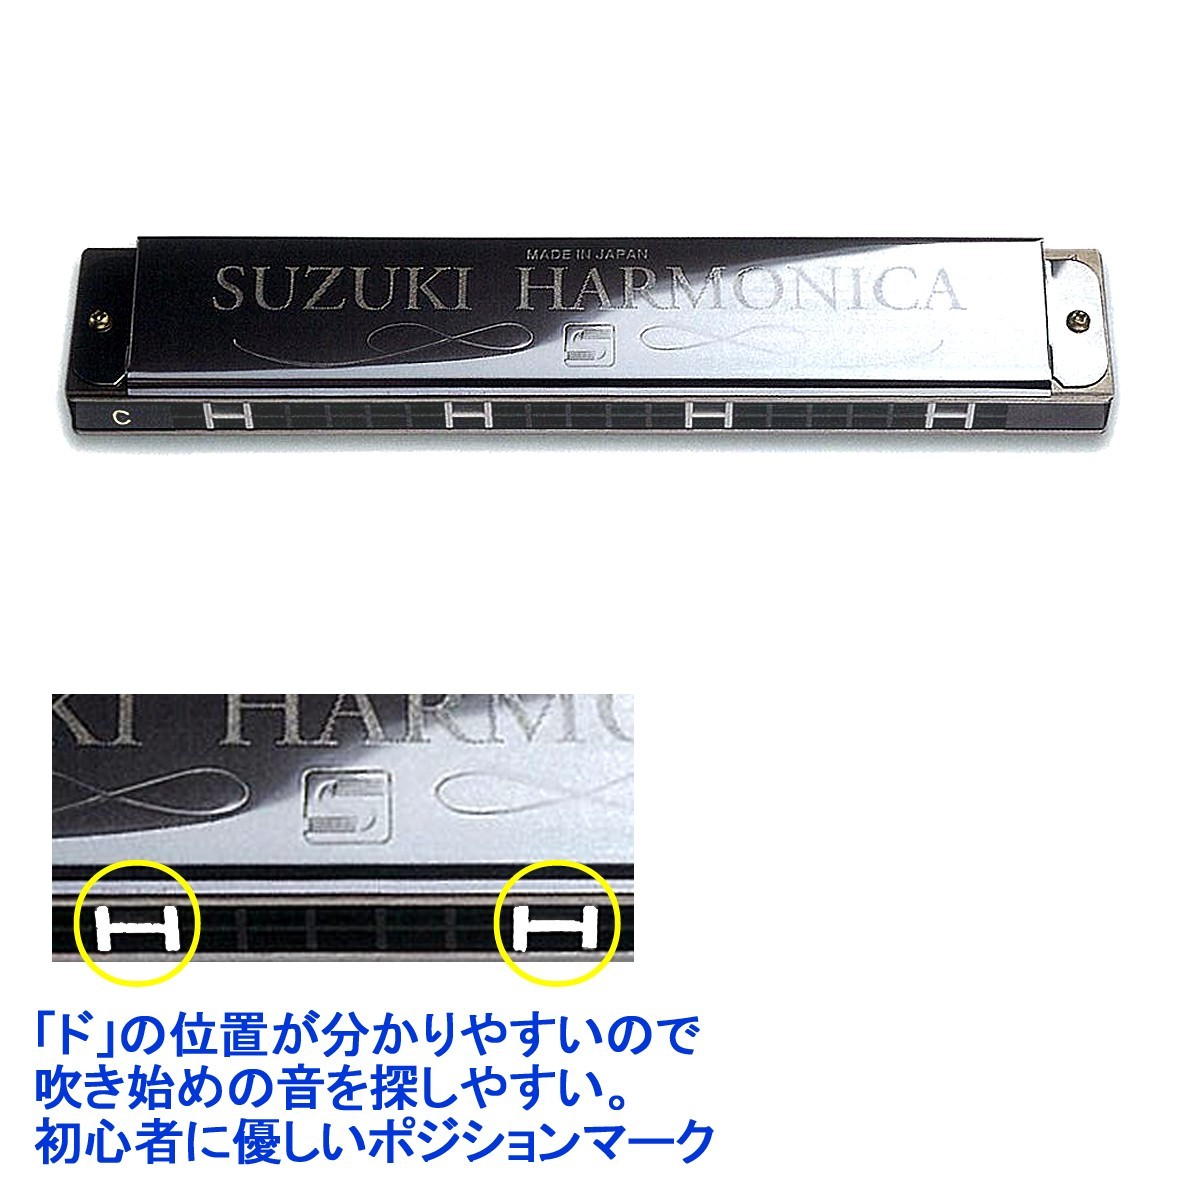 . звук губная гармоника 21 дыра [ специальный ] Suzuki музыкальные инструменты /SU-21